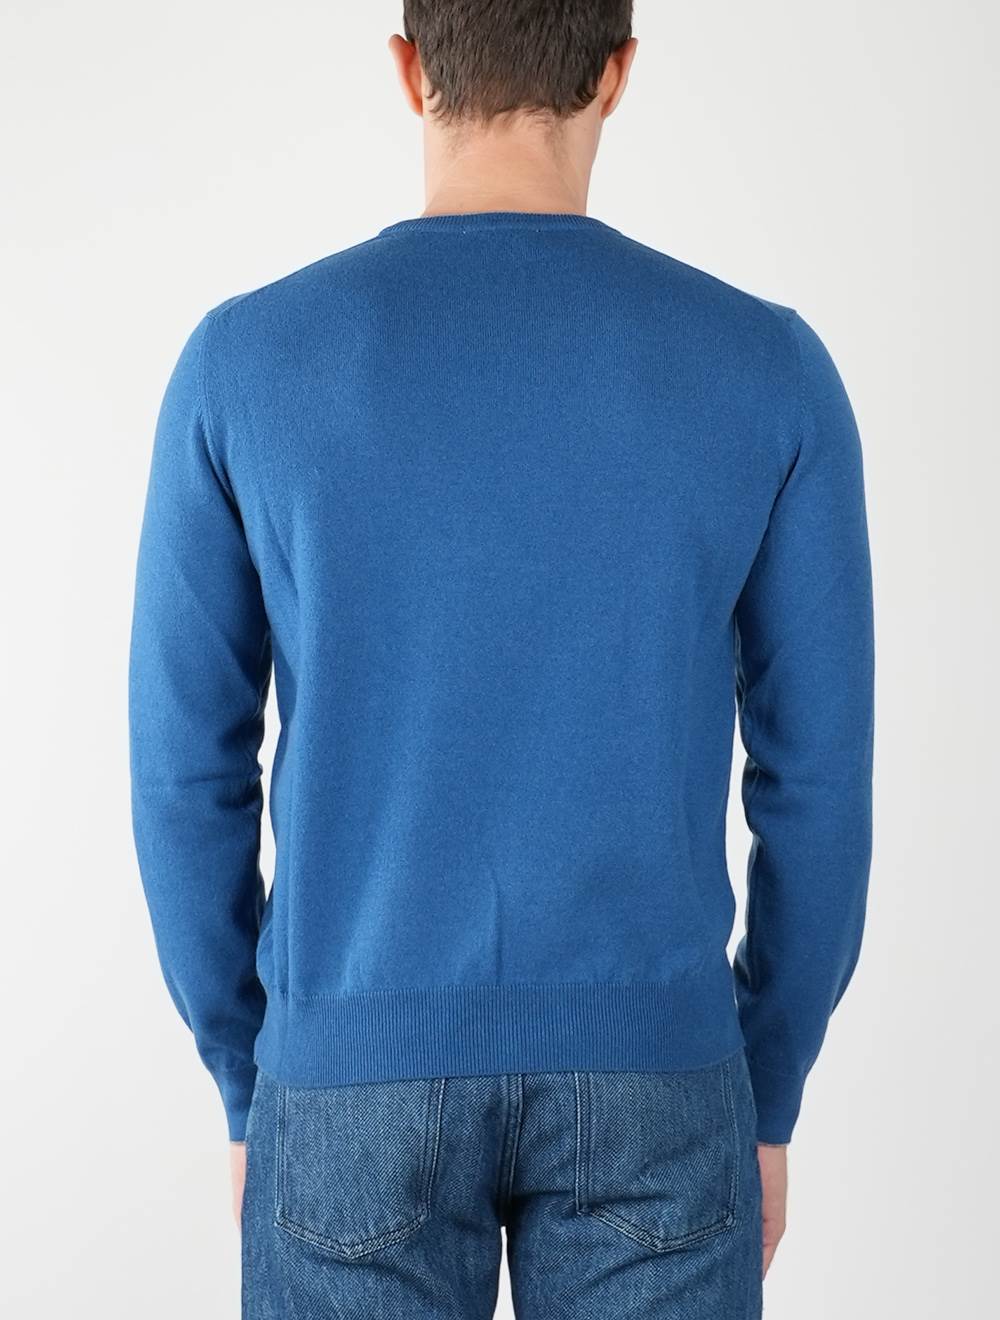 Fioroni Blue Cashmere Sweater Crewneck